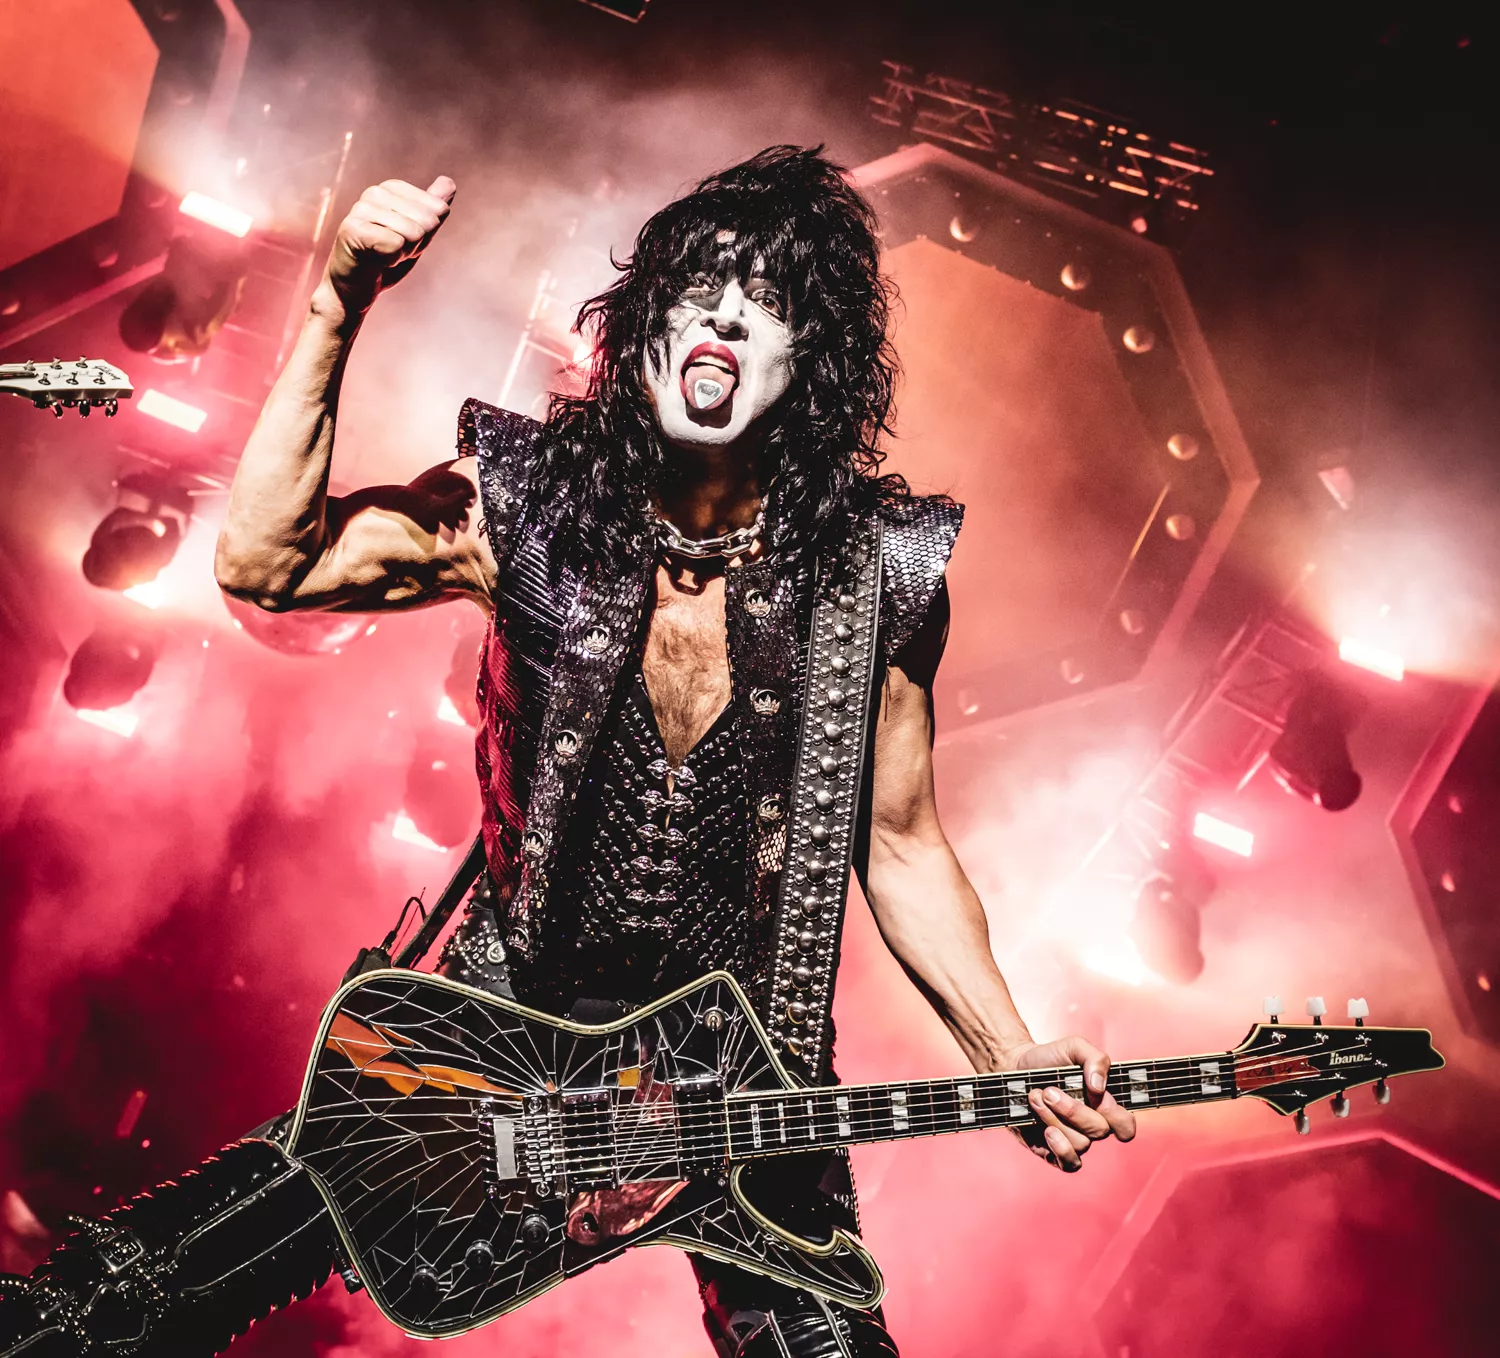 Frontmand i Kiss opfordrer til brug af mundbind